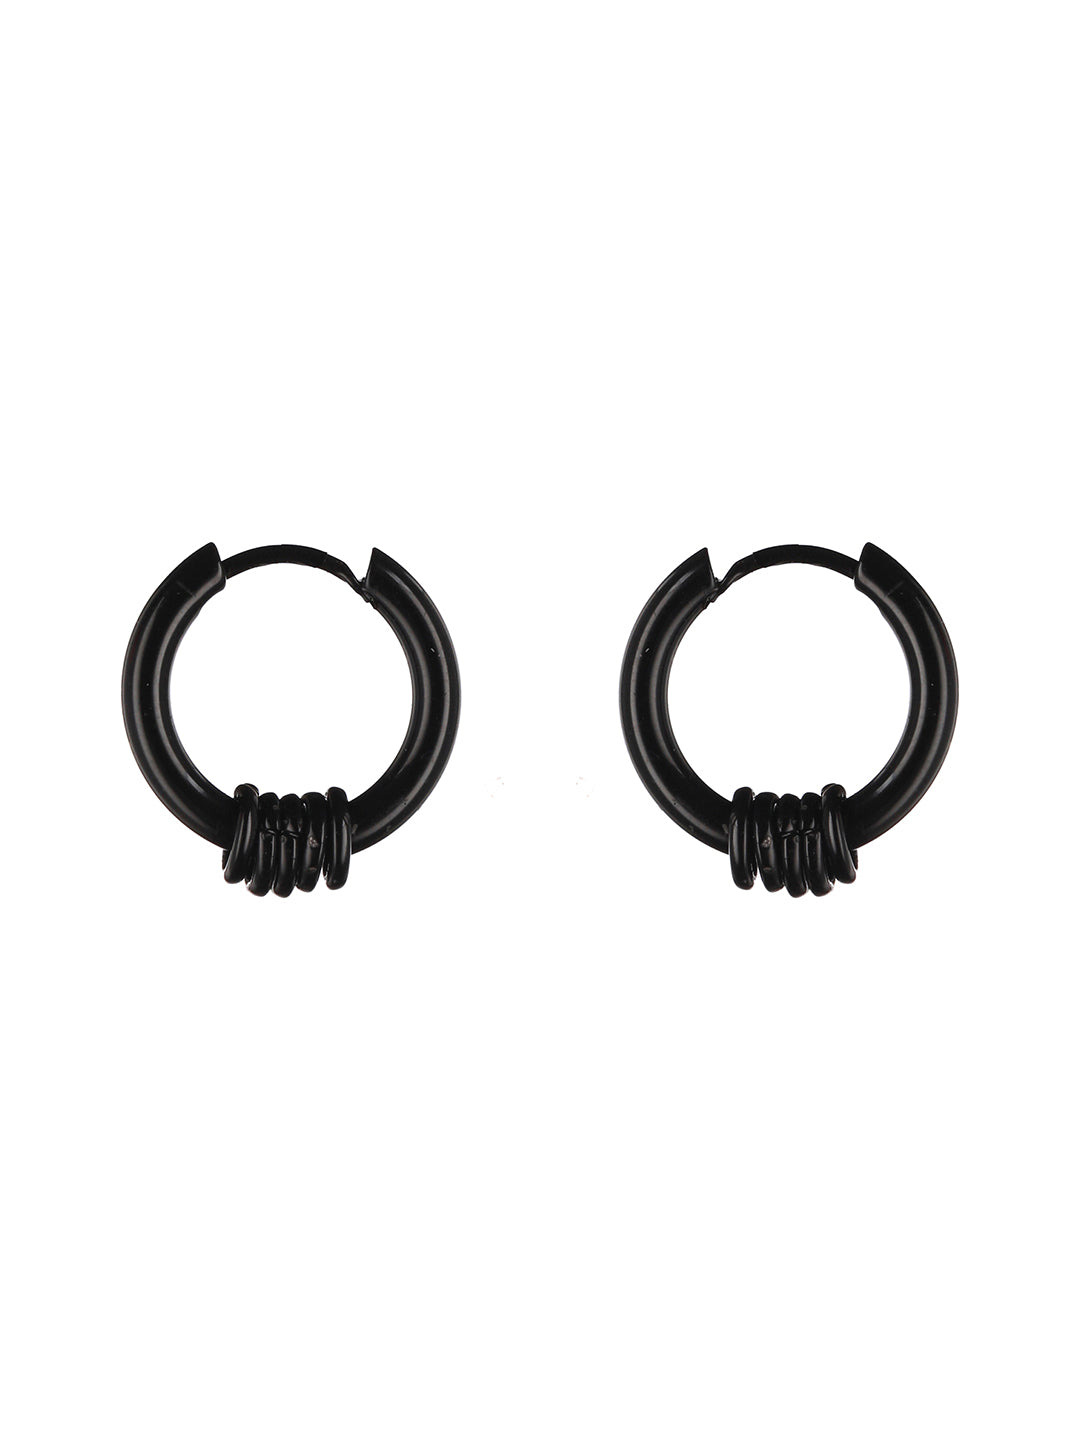 Men Black Earrings  Buy Men Black Earrings online in India